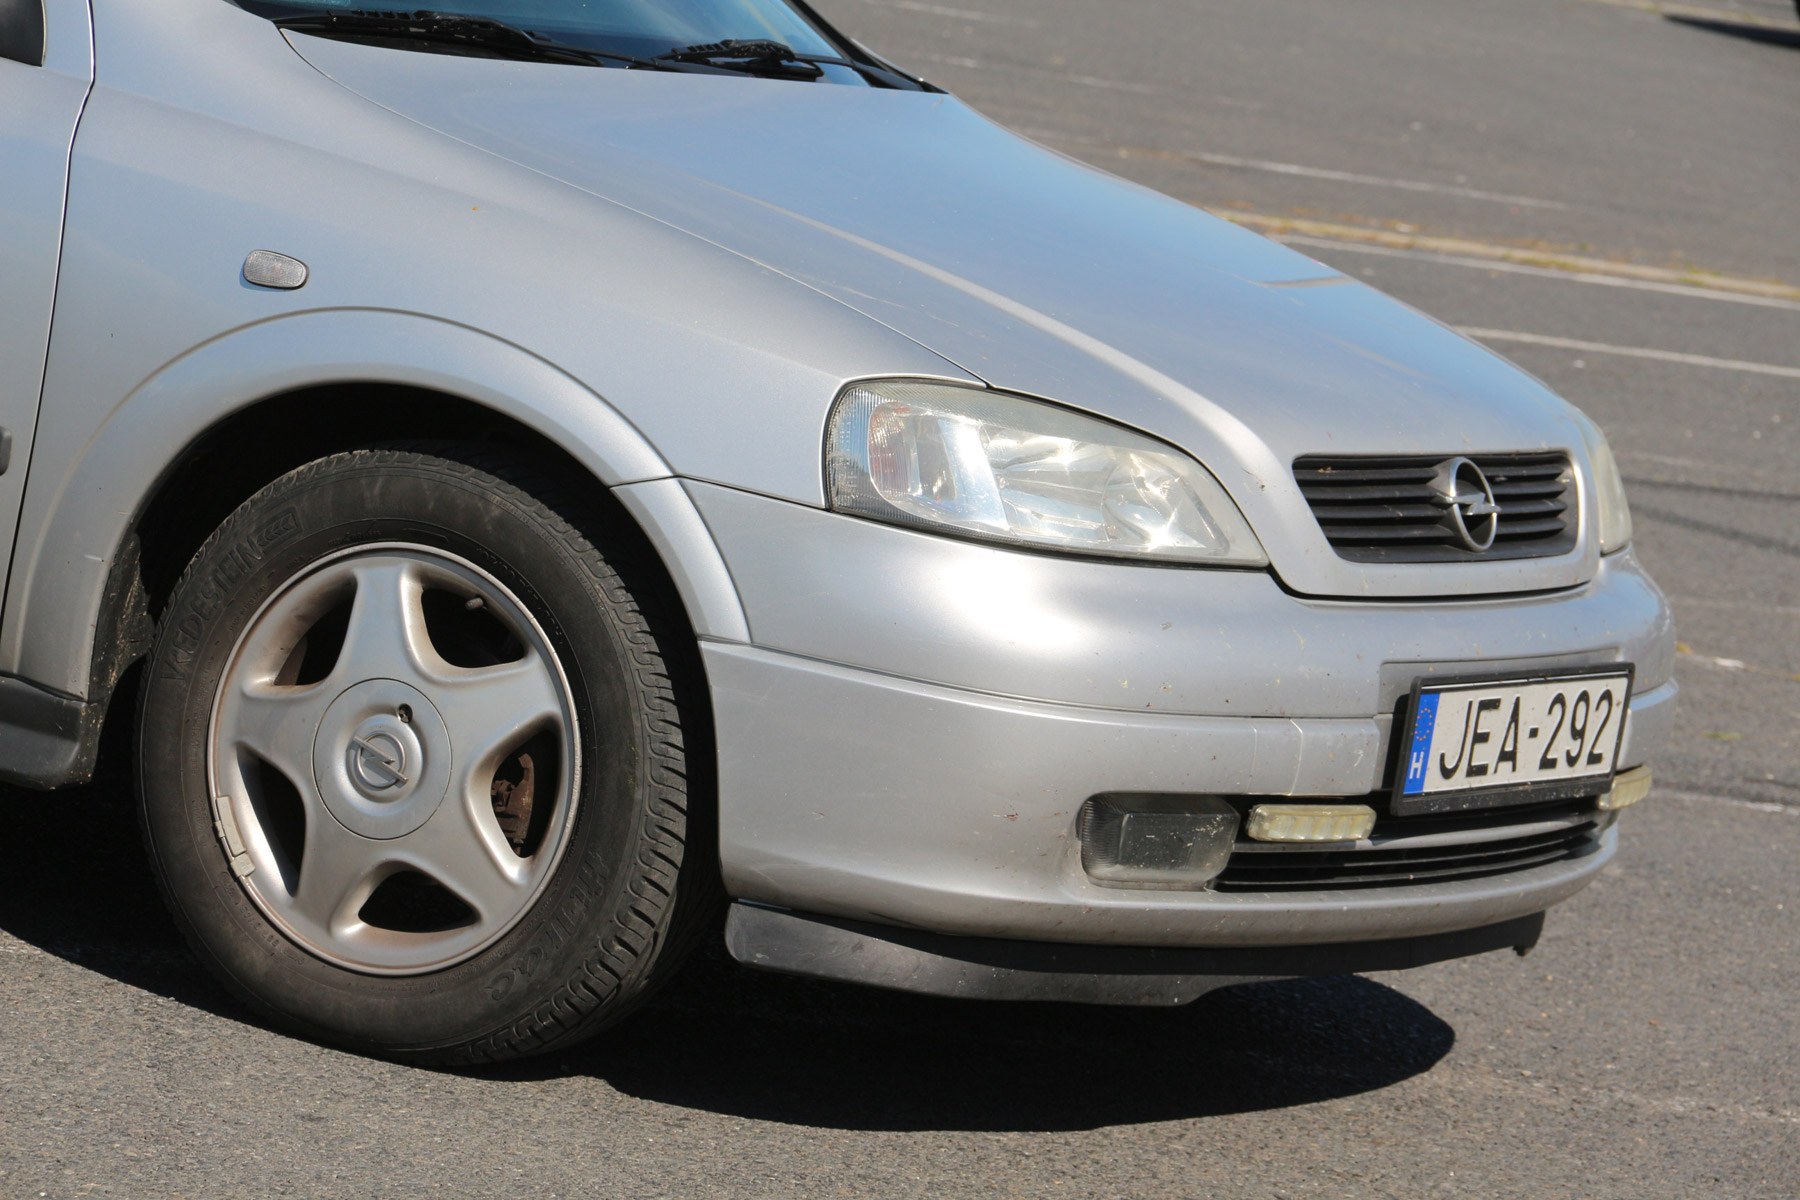 Használt autó: ilyen egy Opel Astra 446 601 km-rel 9